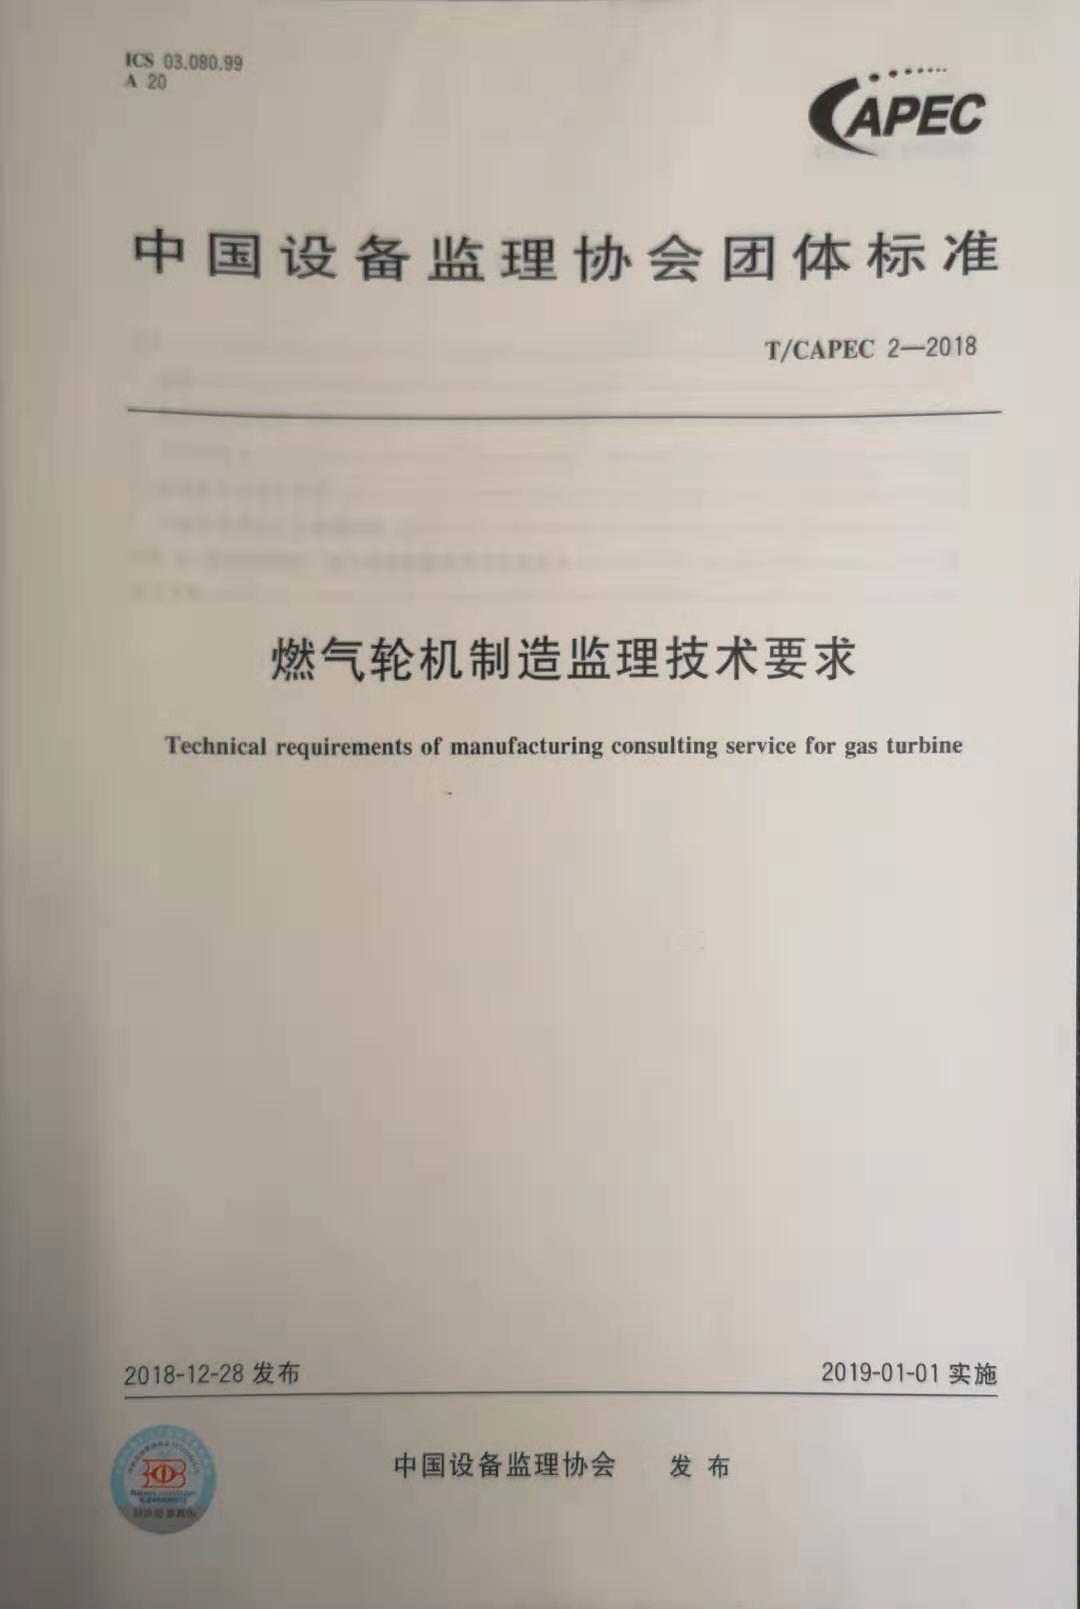 燃气轮机制造监理技术要求(T/CAPEC 2-2018)